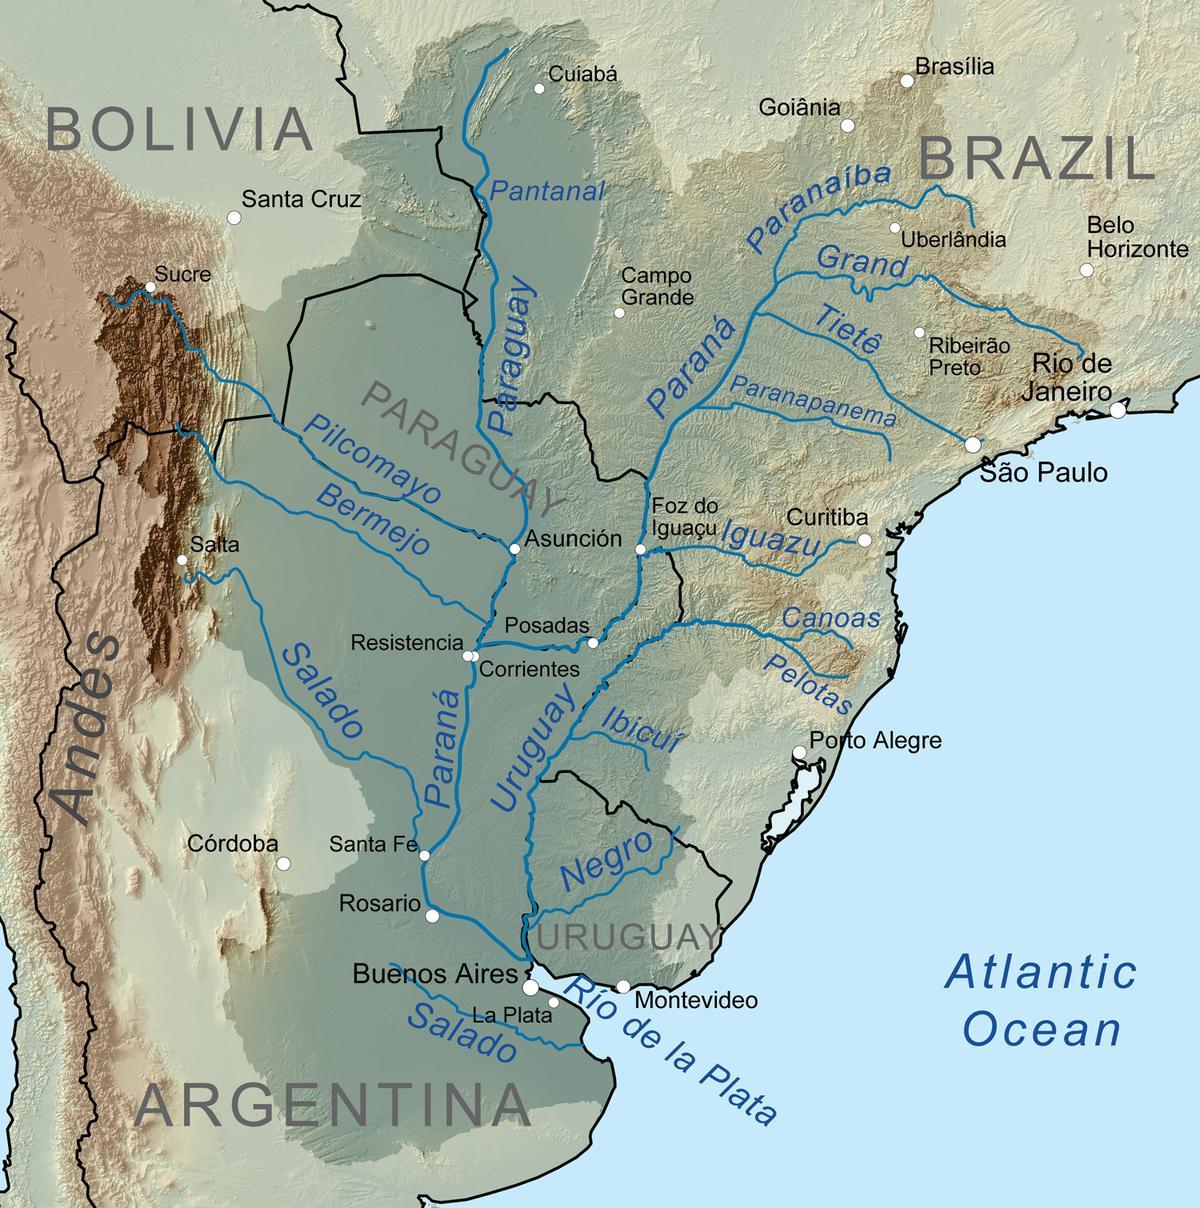 नक्शे के पराग्वे नदी